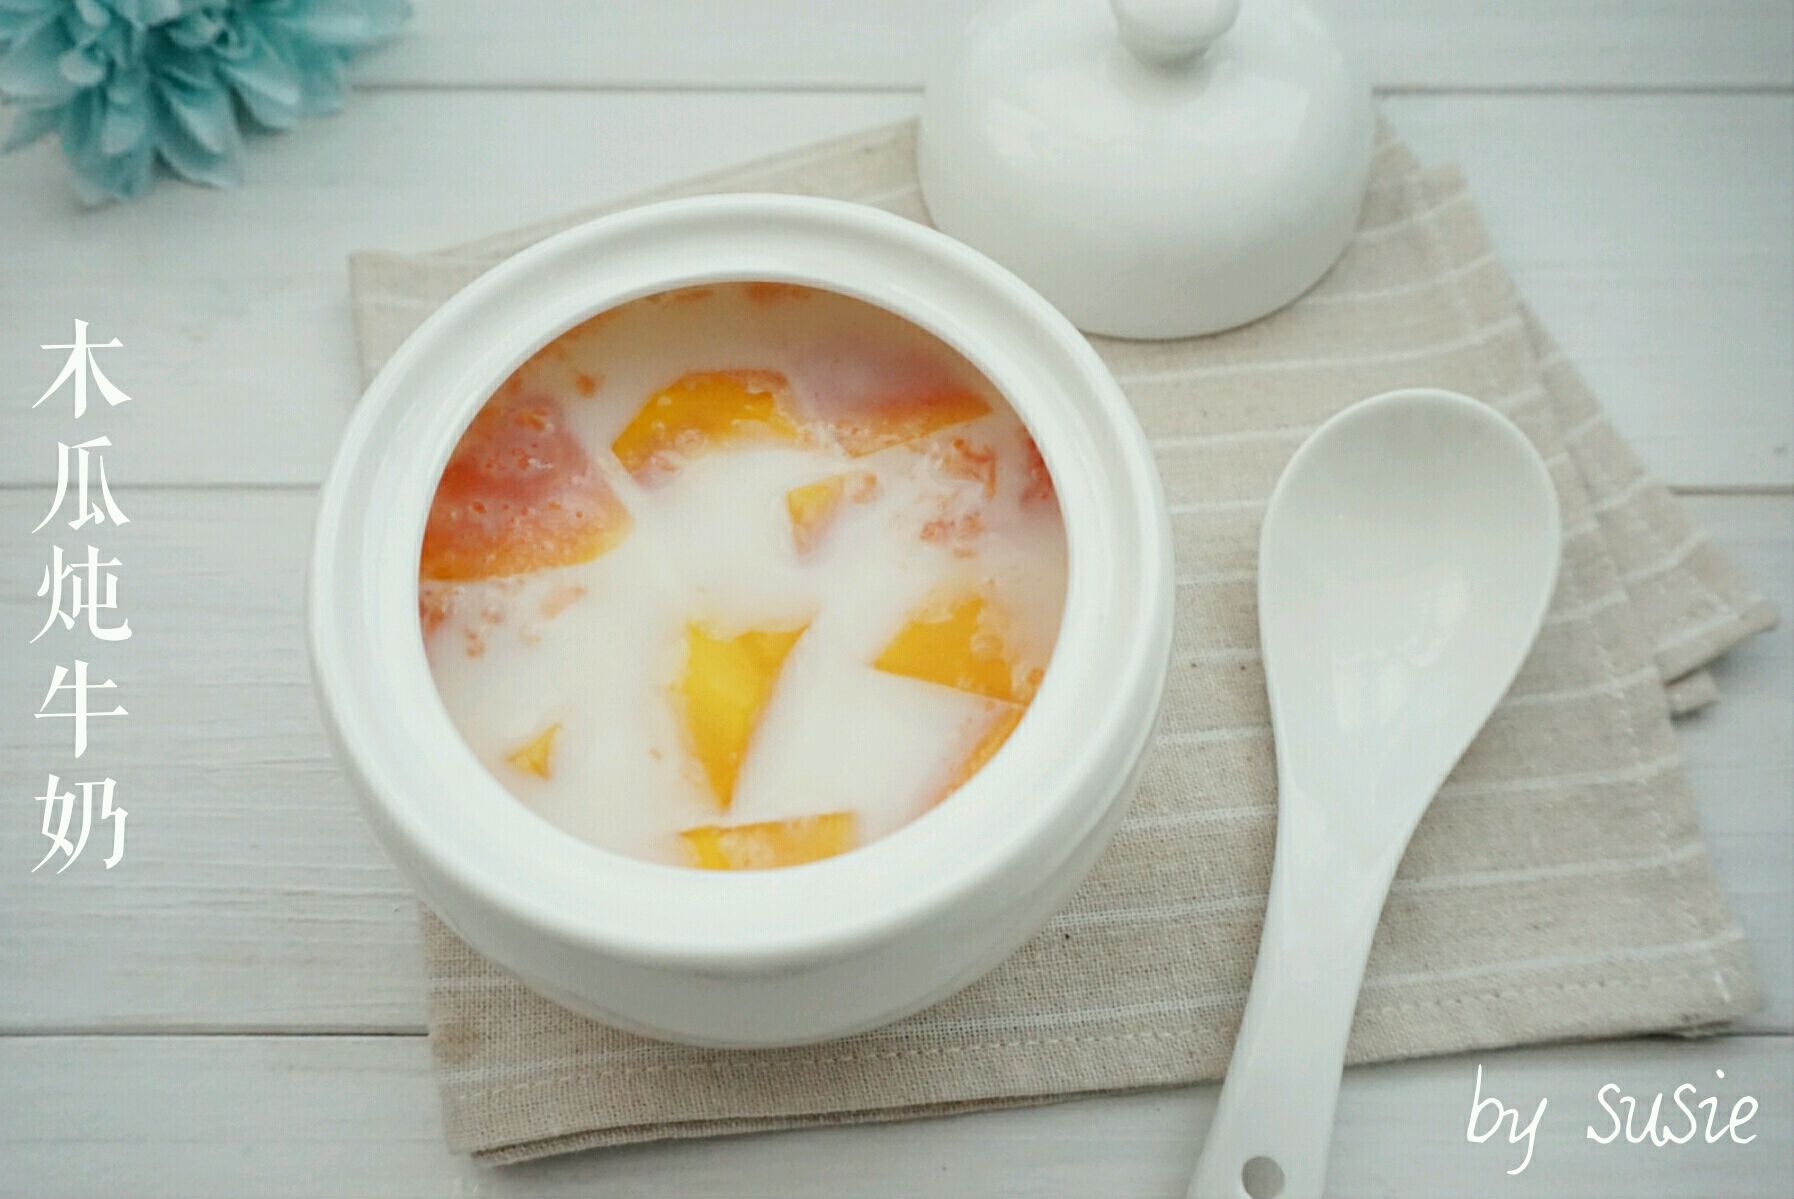 木瓜酸奶汁怎么做_木瓜酸奶汁的做法_瑗瑗baby_豆果美食